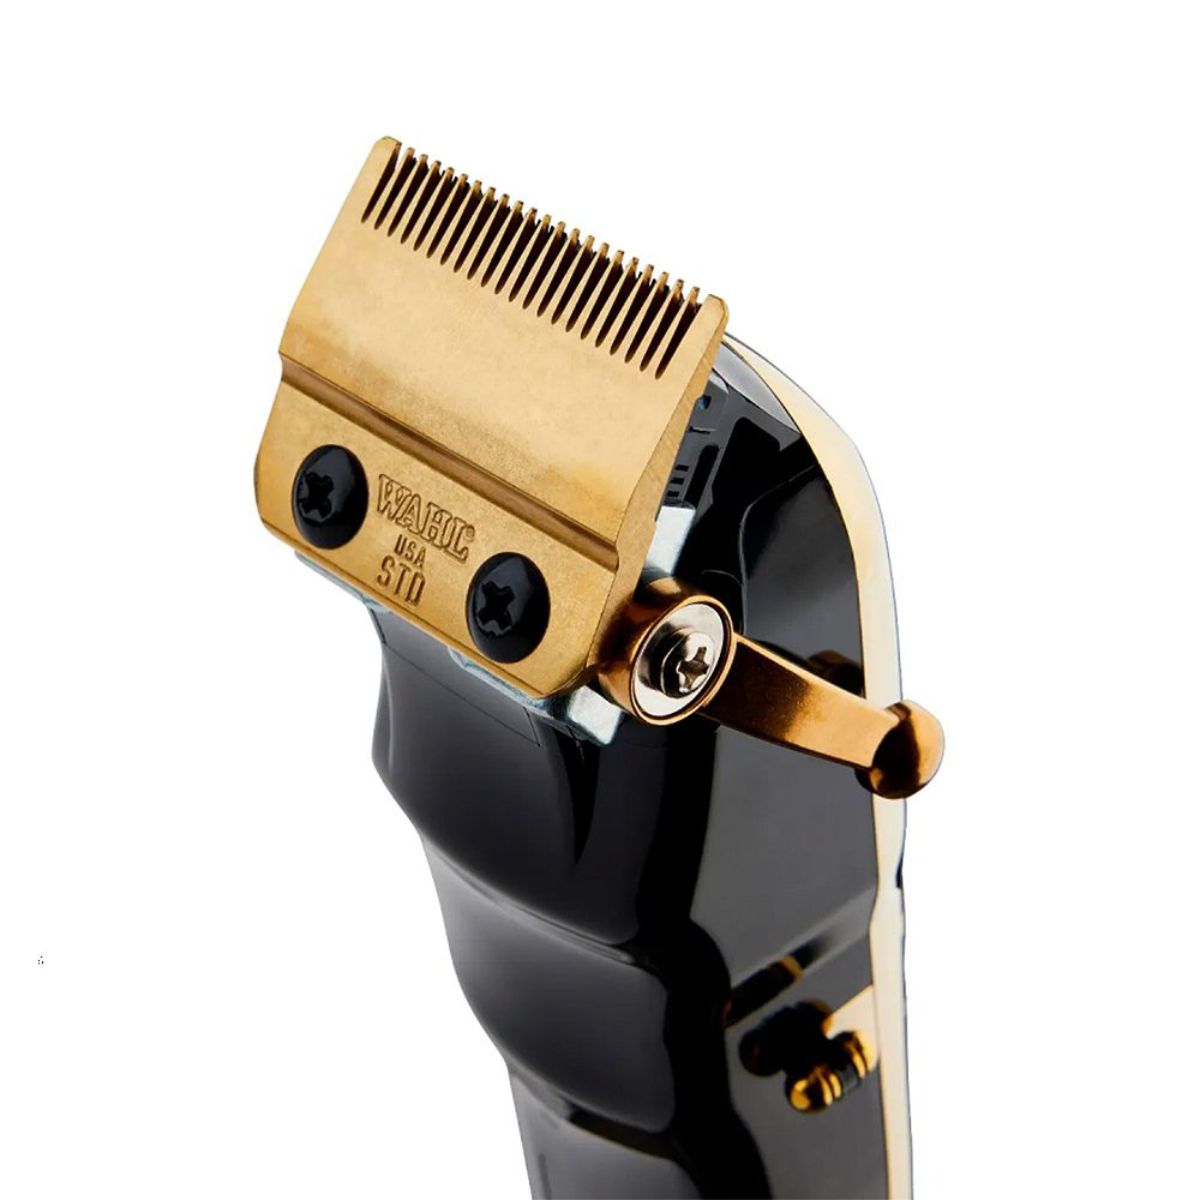 Clipper cortadora de cabello Wahl Magic Clip inalámbrica dorada con base 08148-708 Cabello